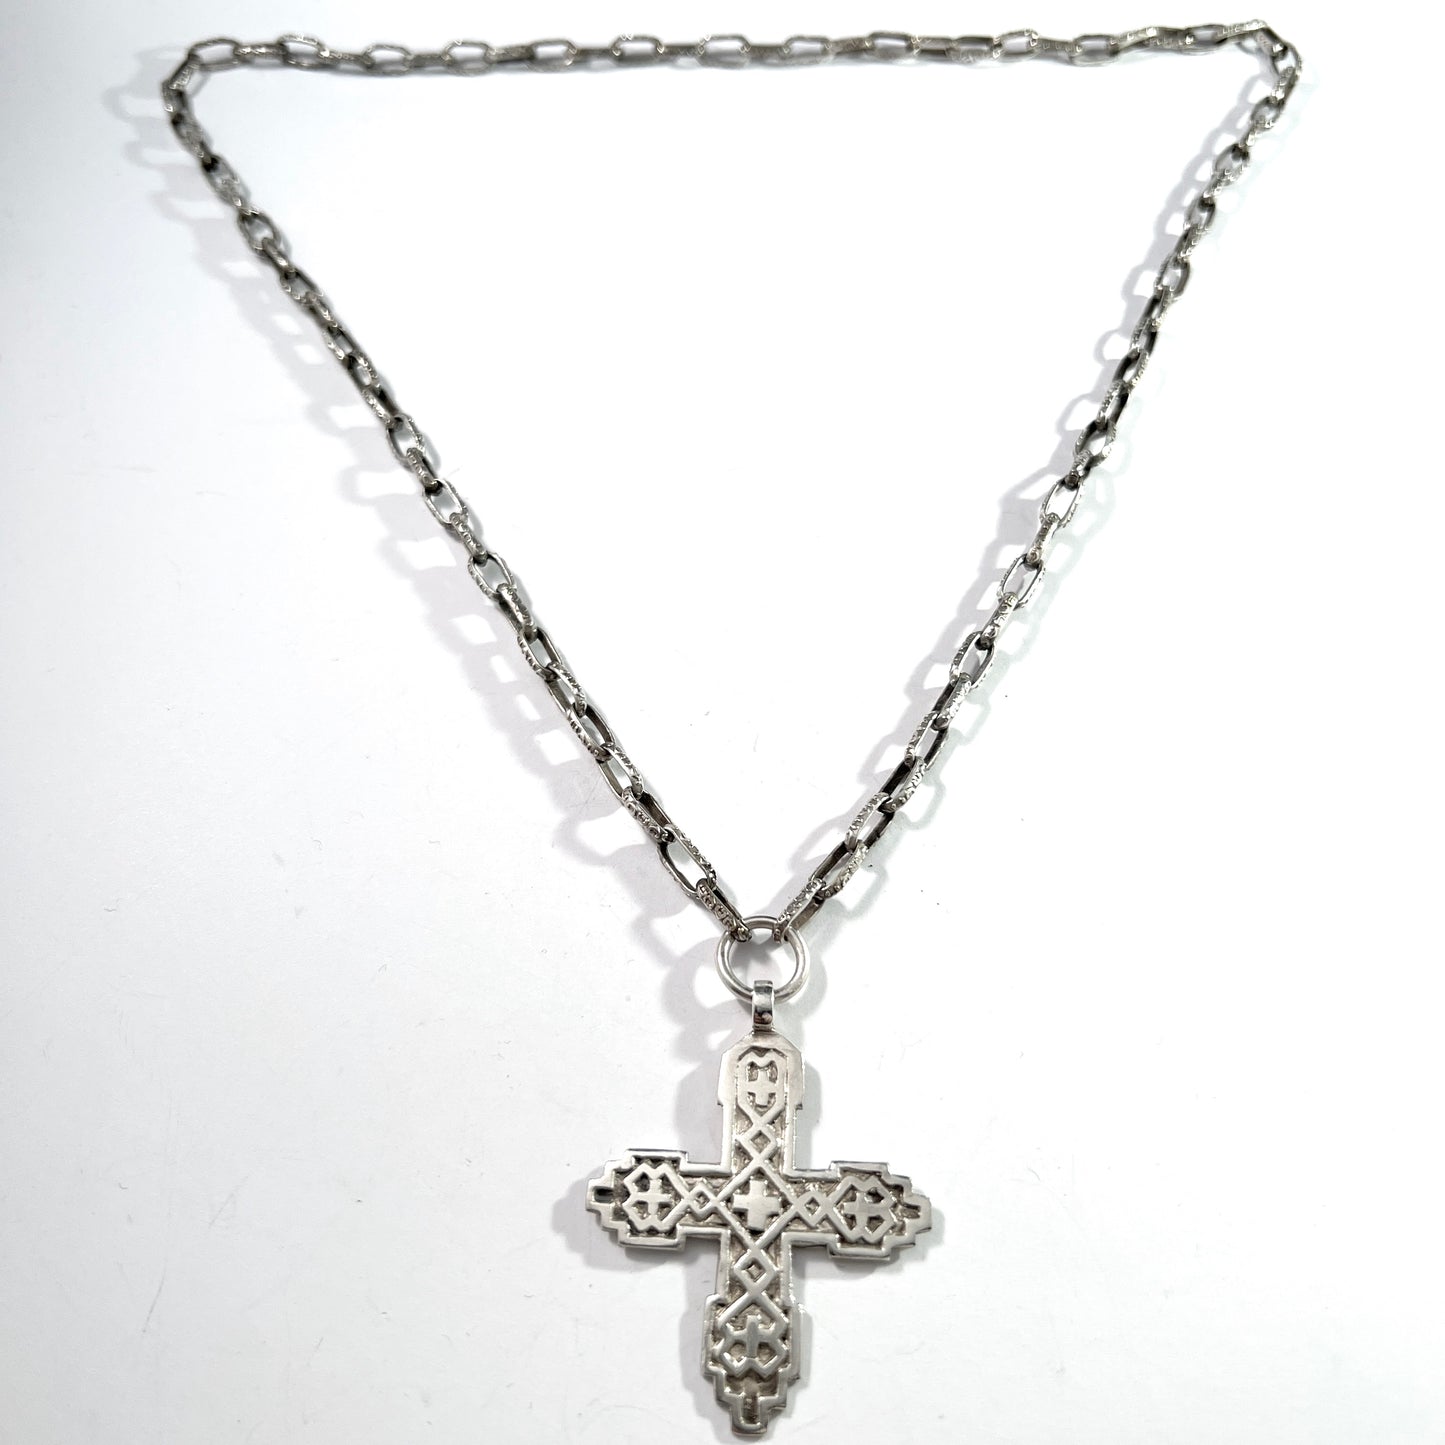 H.Kaksonen for Kalevala Koru, Finland 1943. War-Time Solid Silver Cross Pendant Necklace.